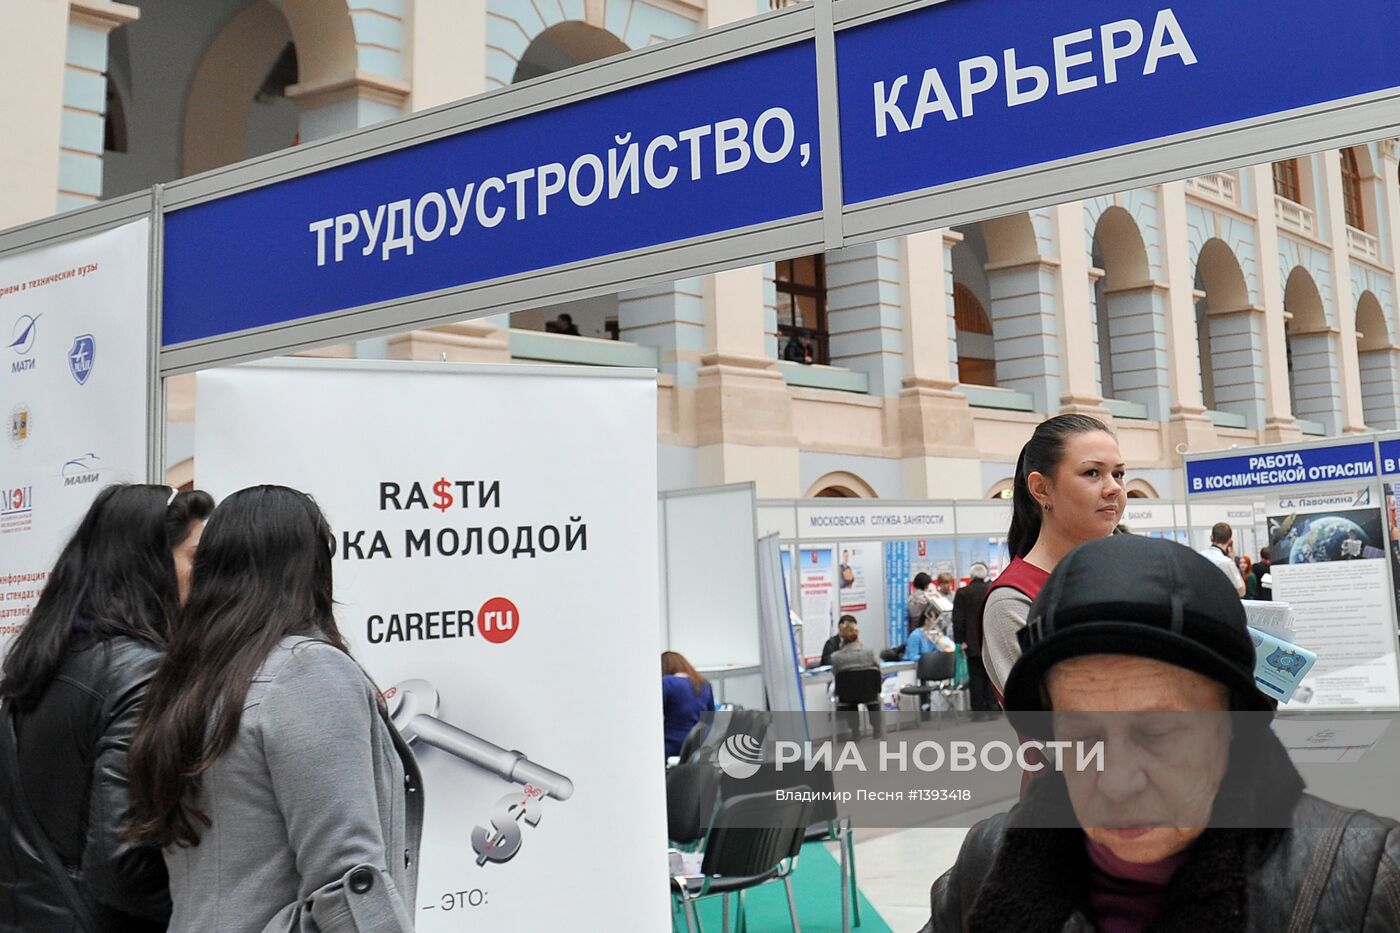 Московская международная выставка "Образование и карьера"